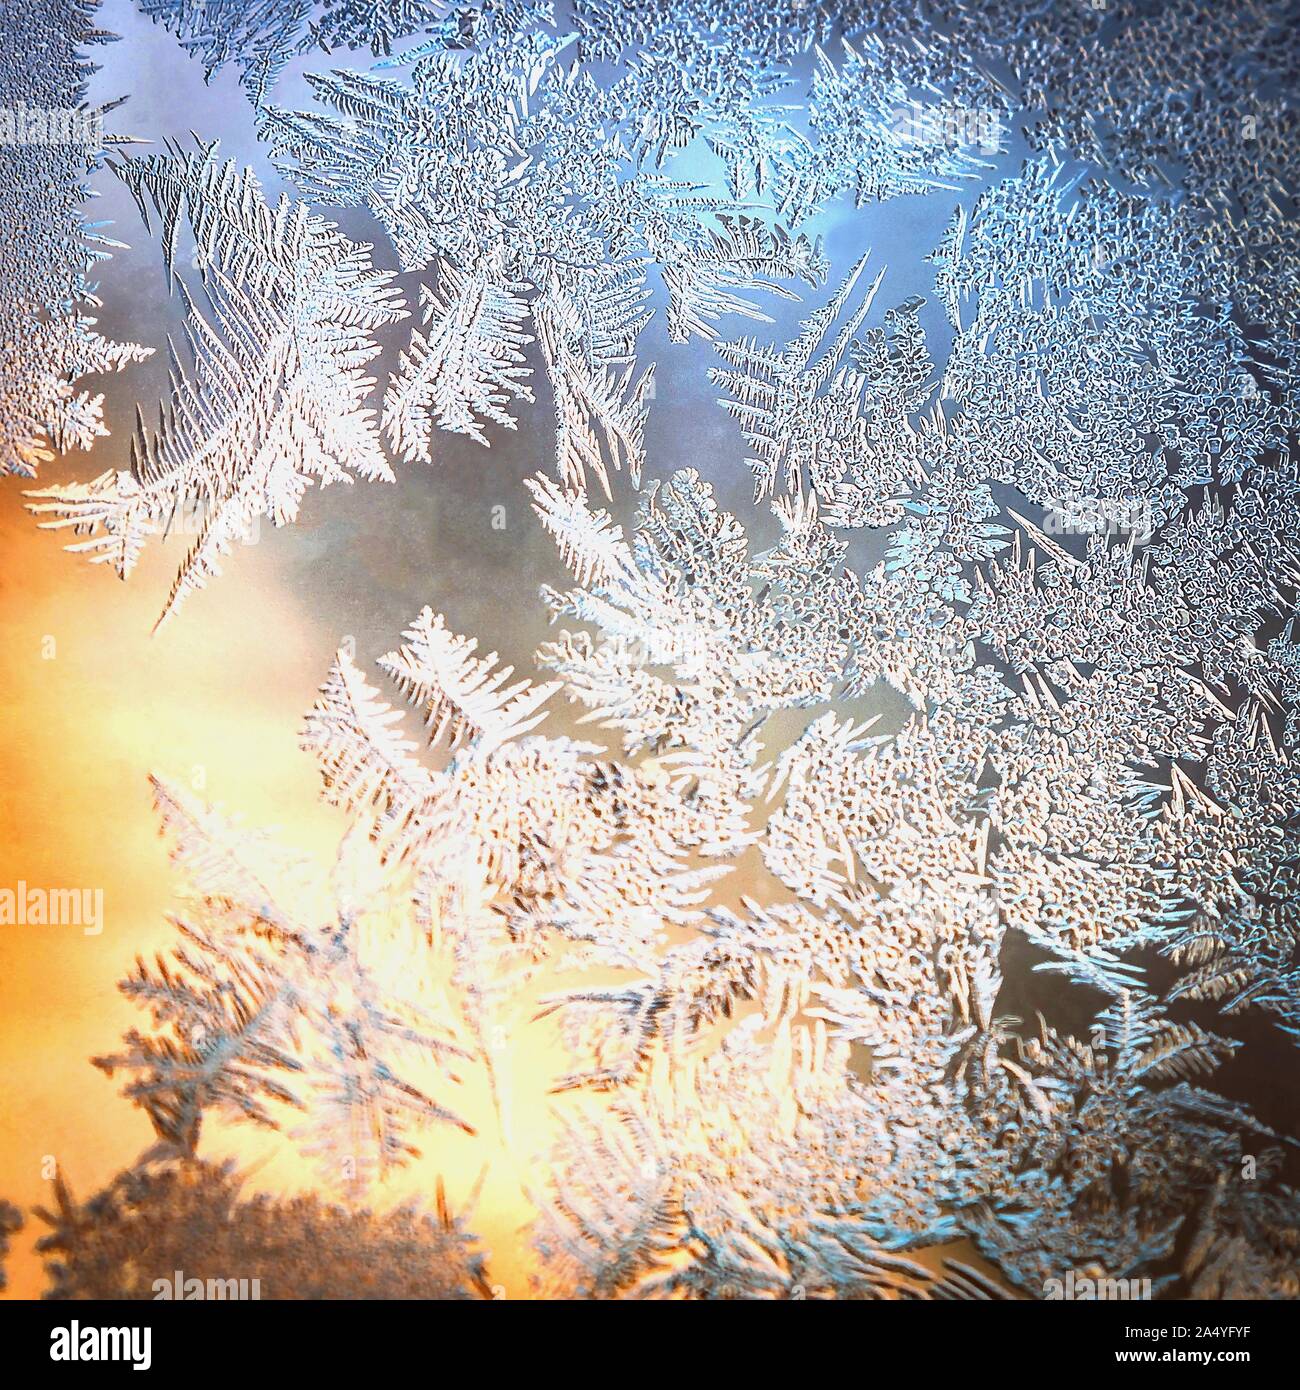 El vidrio de la ventana helada con hielo natural y patrones de fondo de colores borrosos. La temporada de vacaciones de invierno, el concepto de mundo de fantasía. Foto de stock